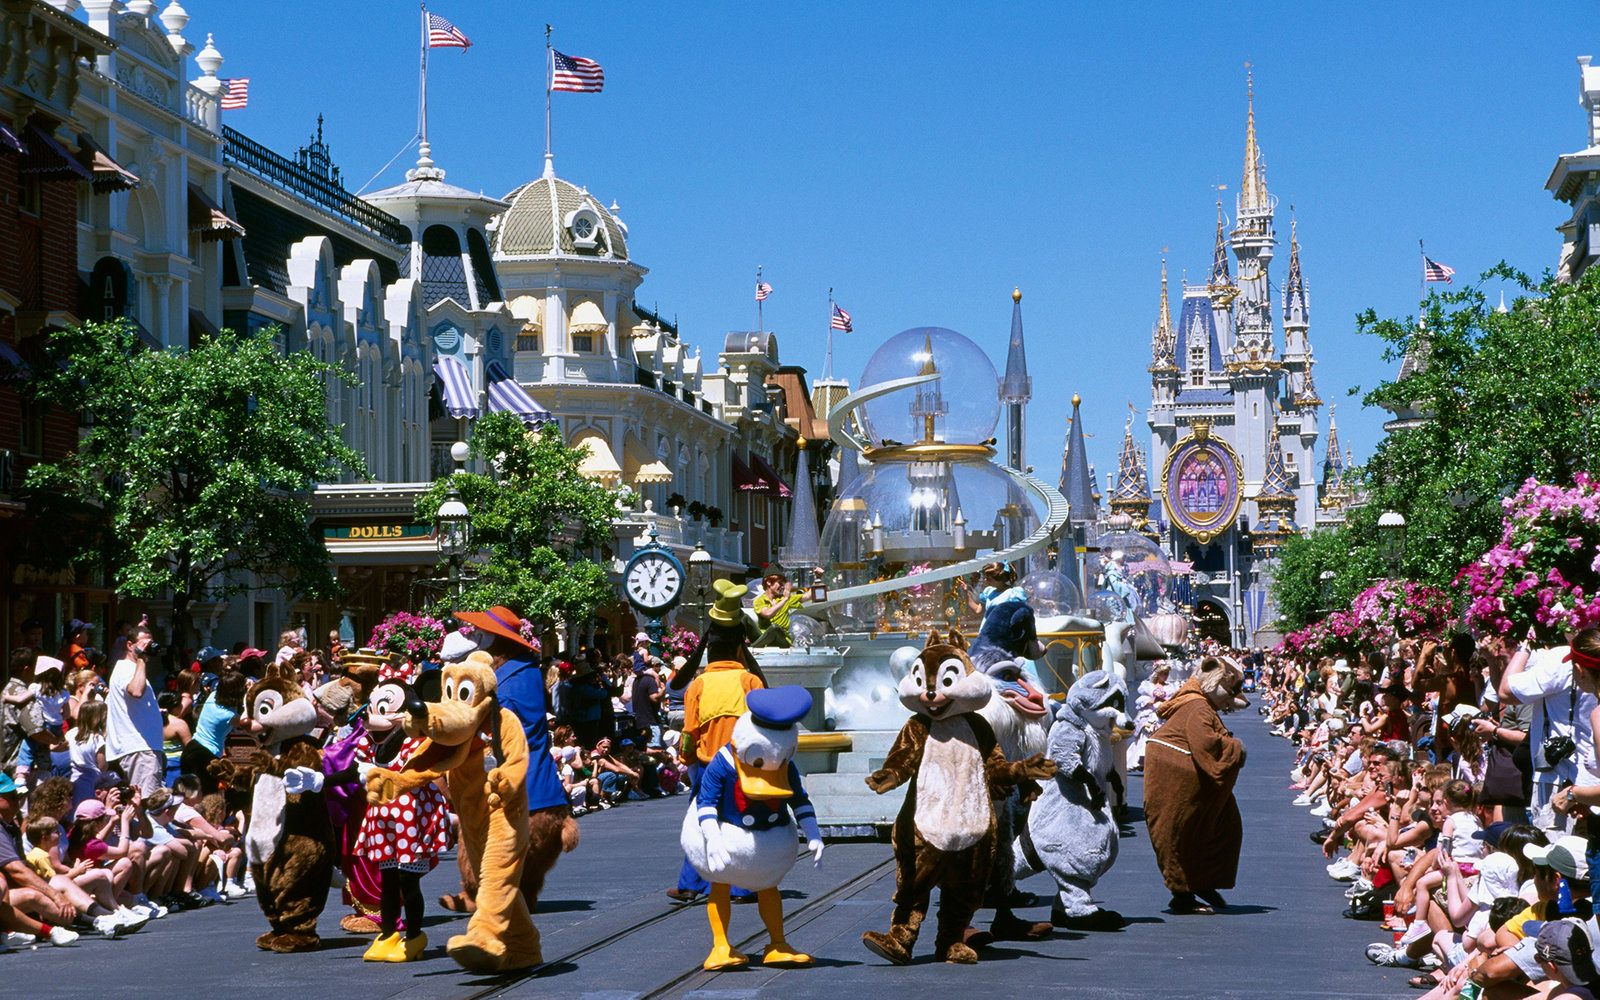 Walt Disney World Backgrounds, Compatible - PC, Mobile, Gadgets| 1600x1000 px